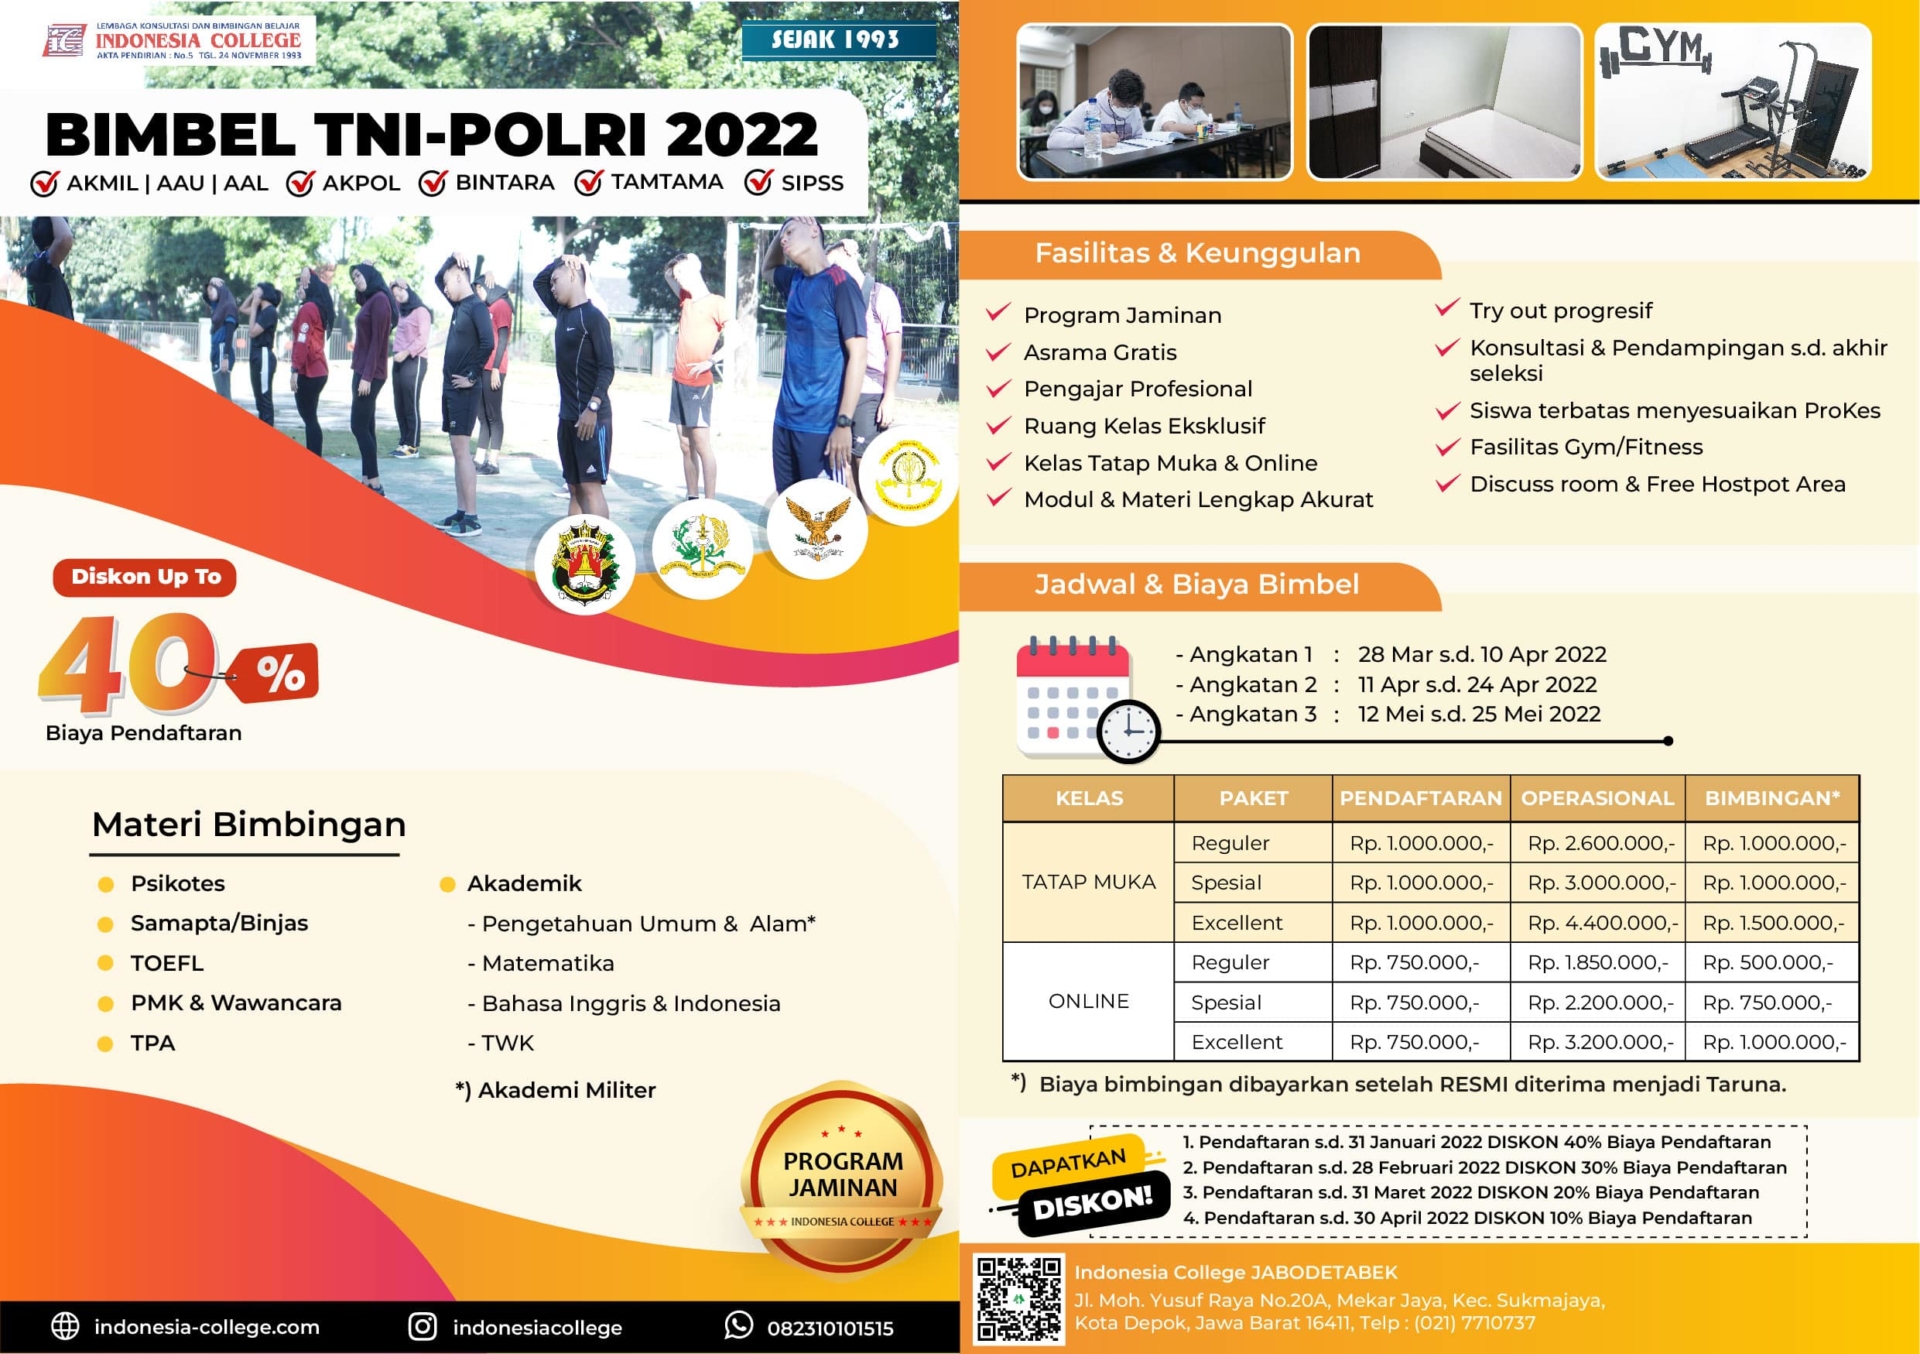 Bimbel TNI-POLRI 2022